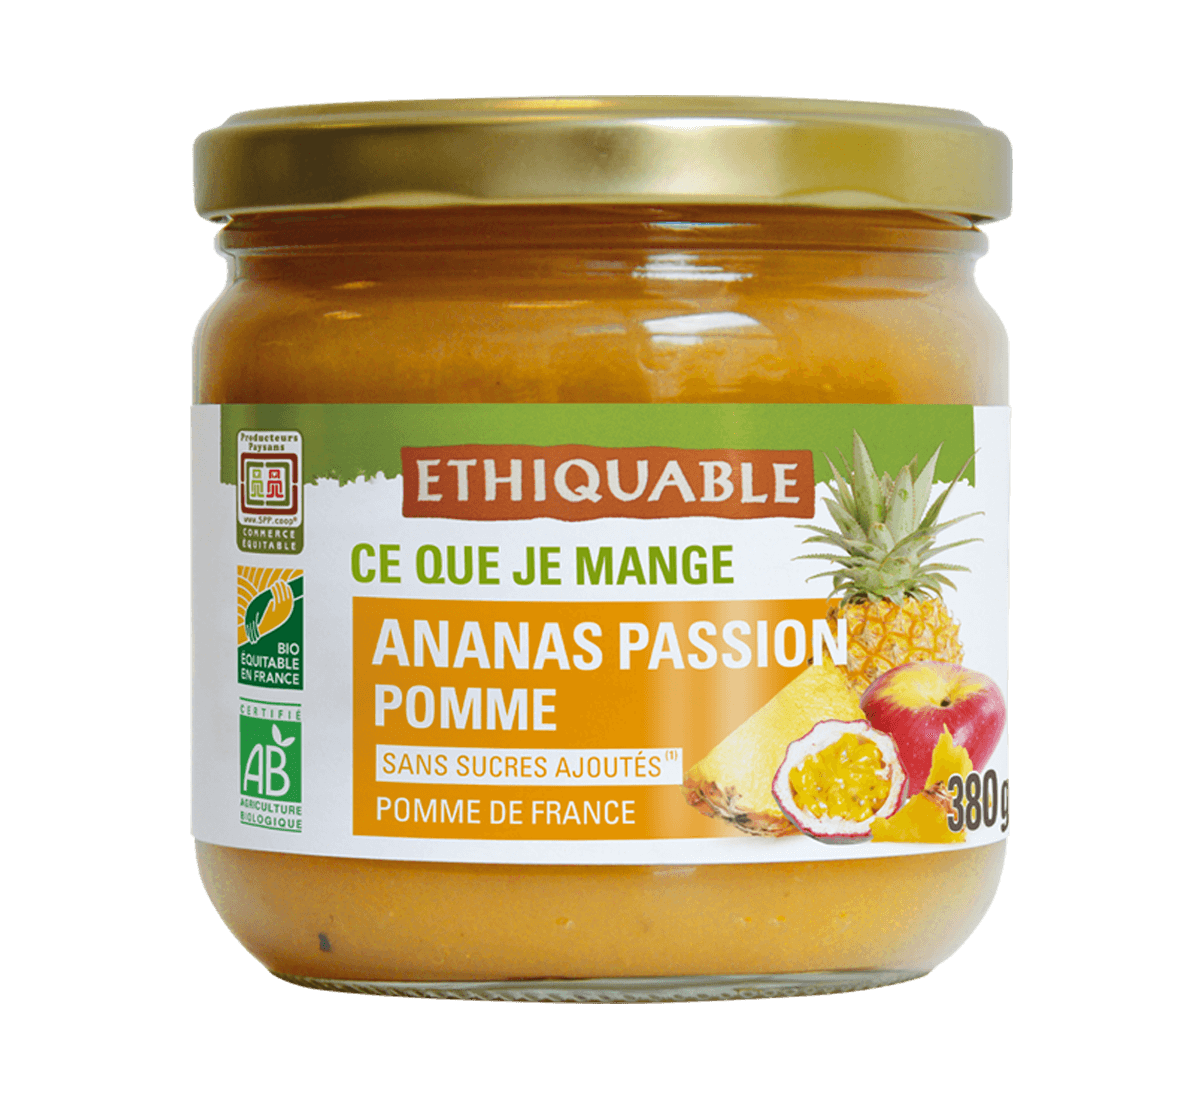 Purée bio ananas passion pomme en bocal issu du Commerce Equitable